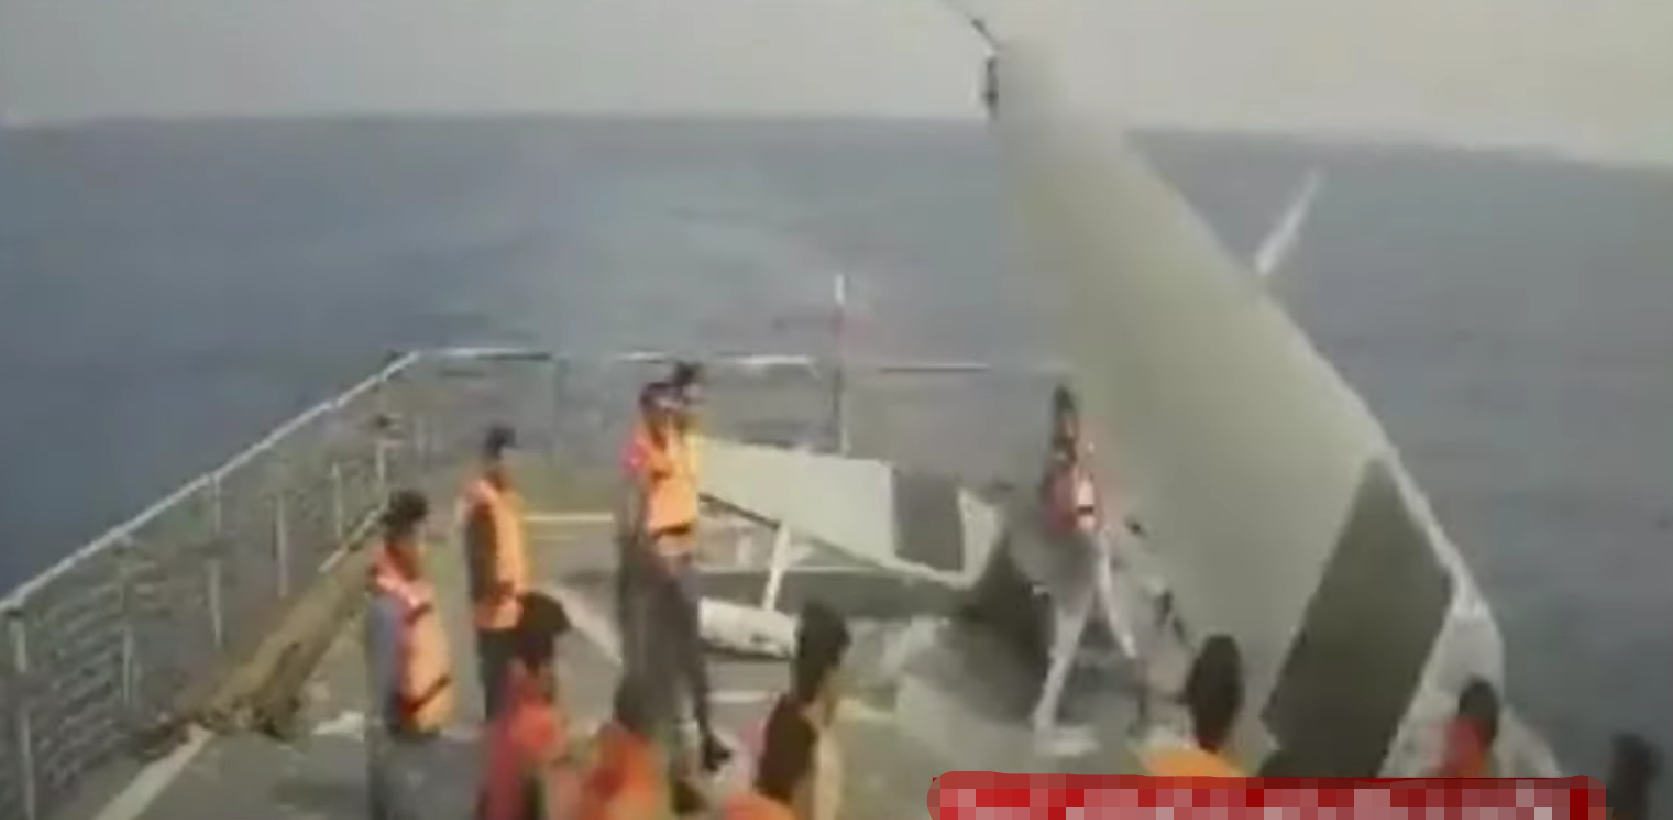 伊朗人员将捕获的美军无人艇推下甲板（伊朗国家电视台）。